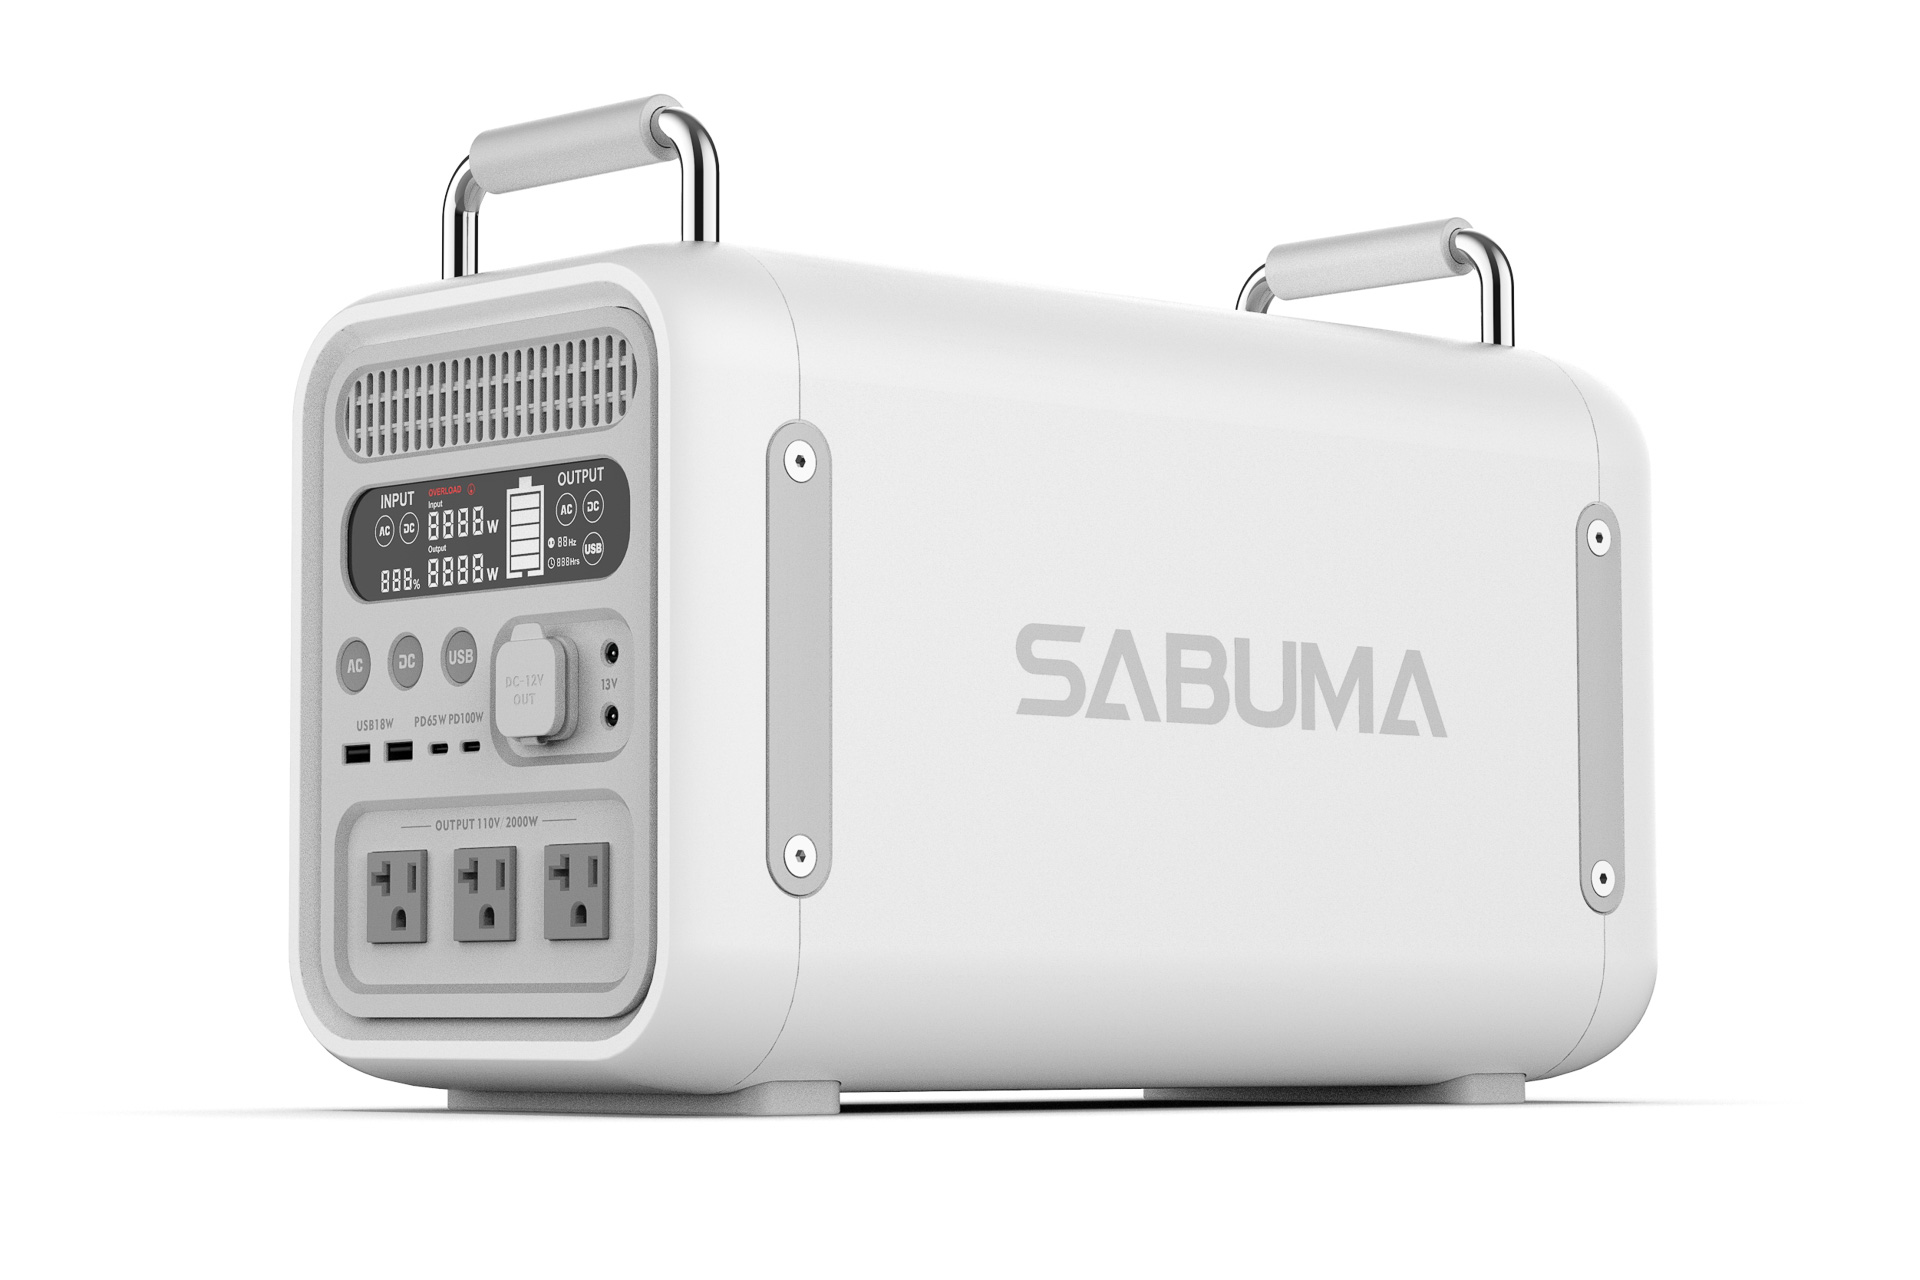 SABUMA、2258Whのポータブル電源「S2200」。クラス最小最軽量 